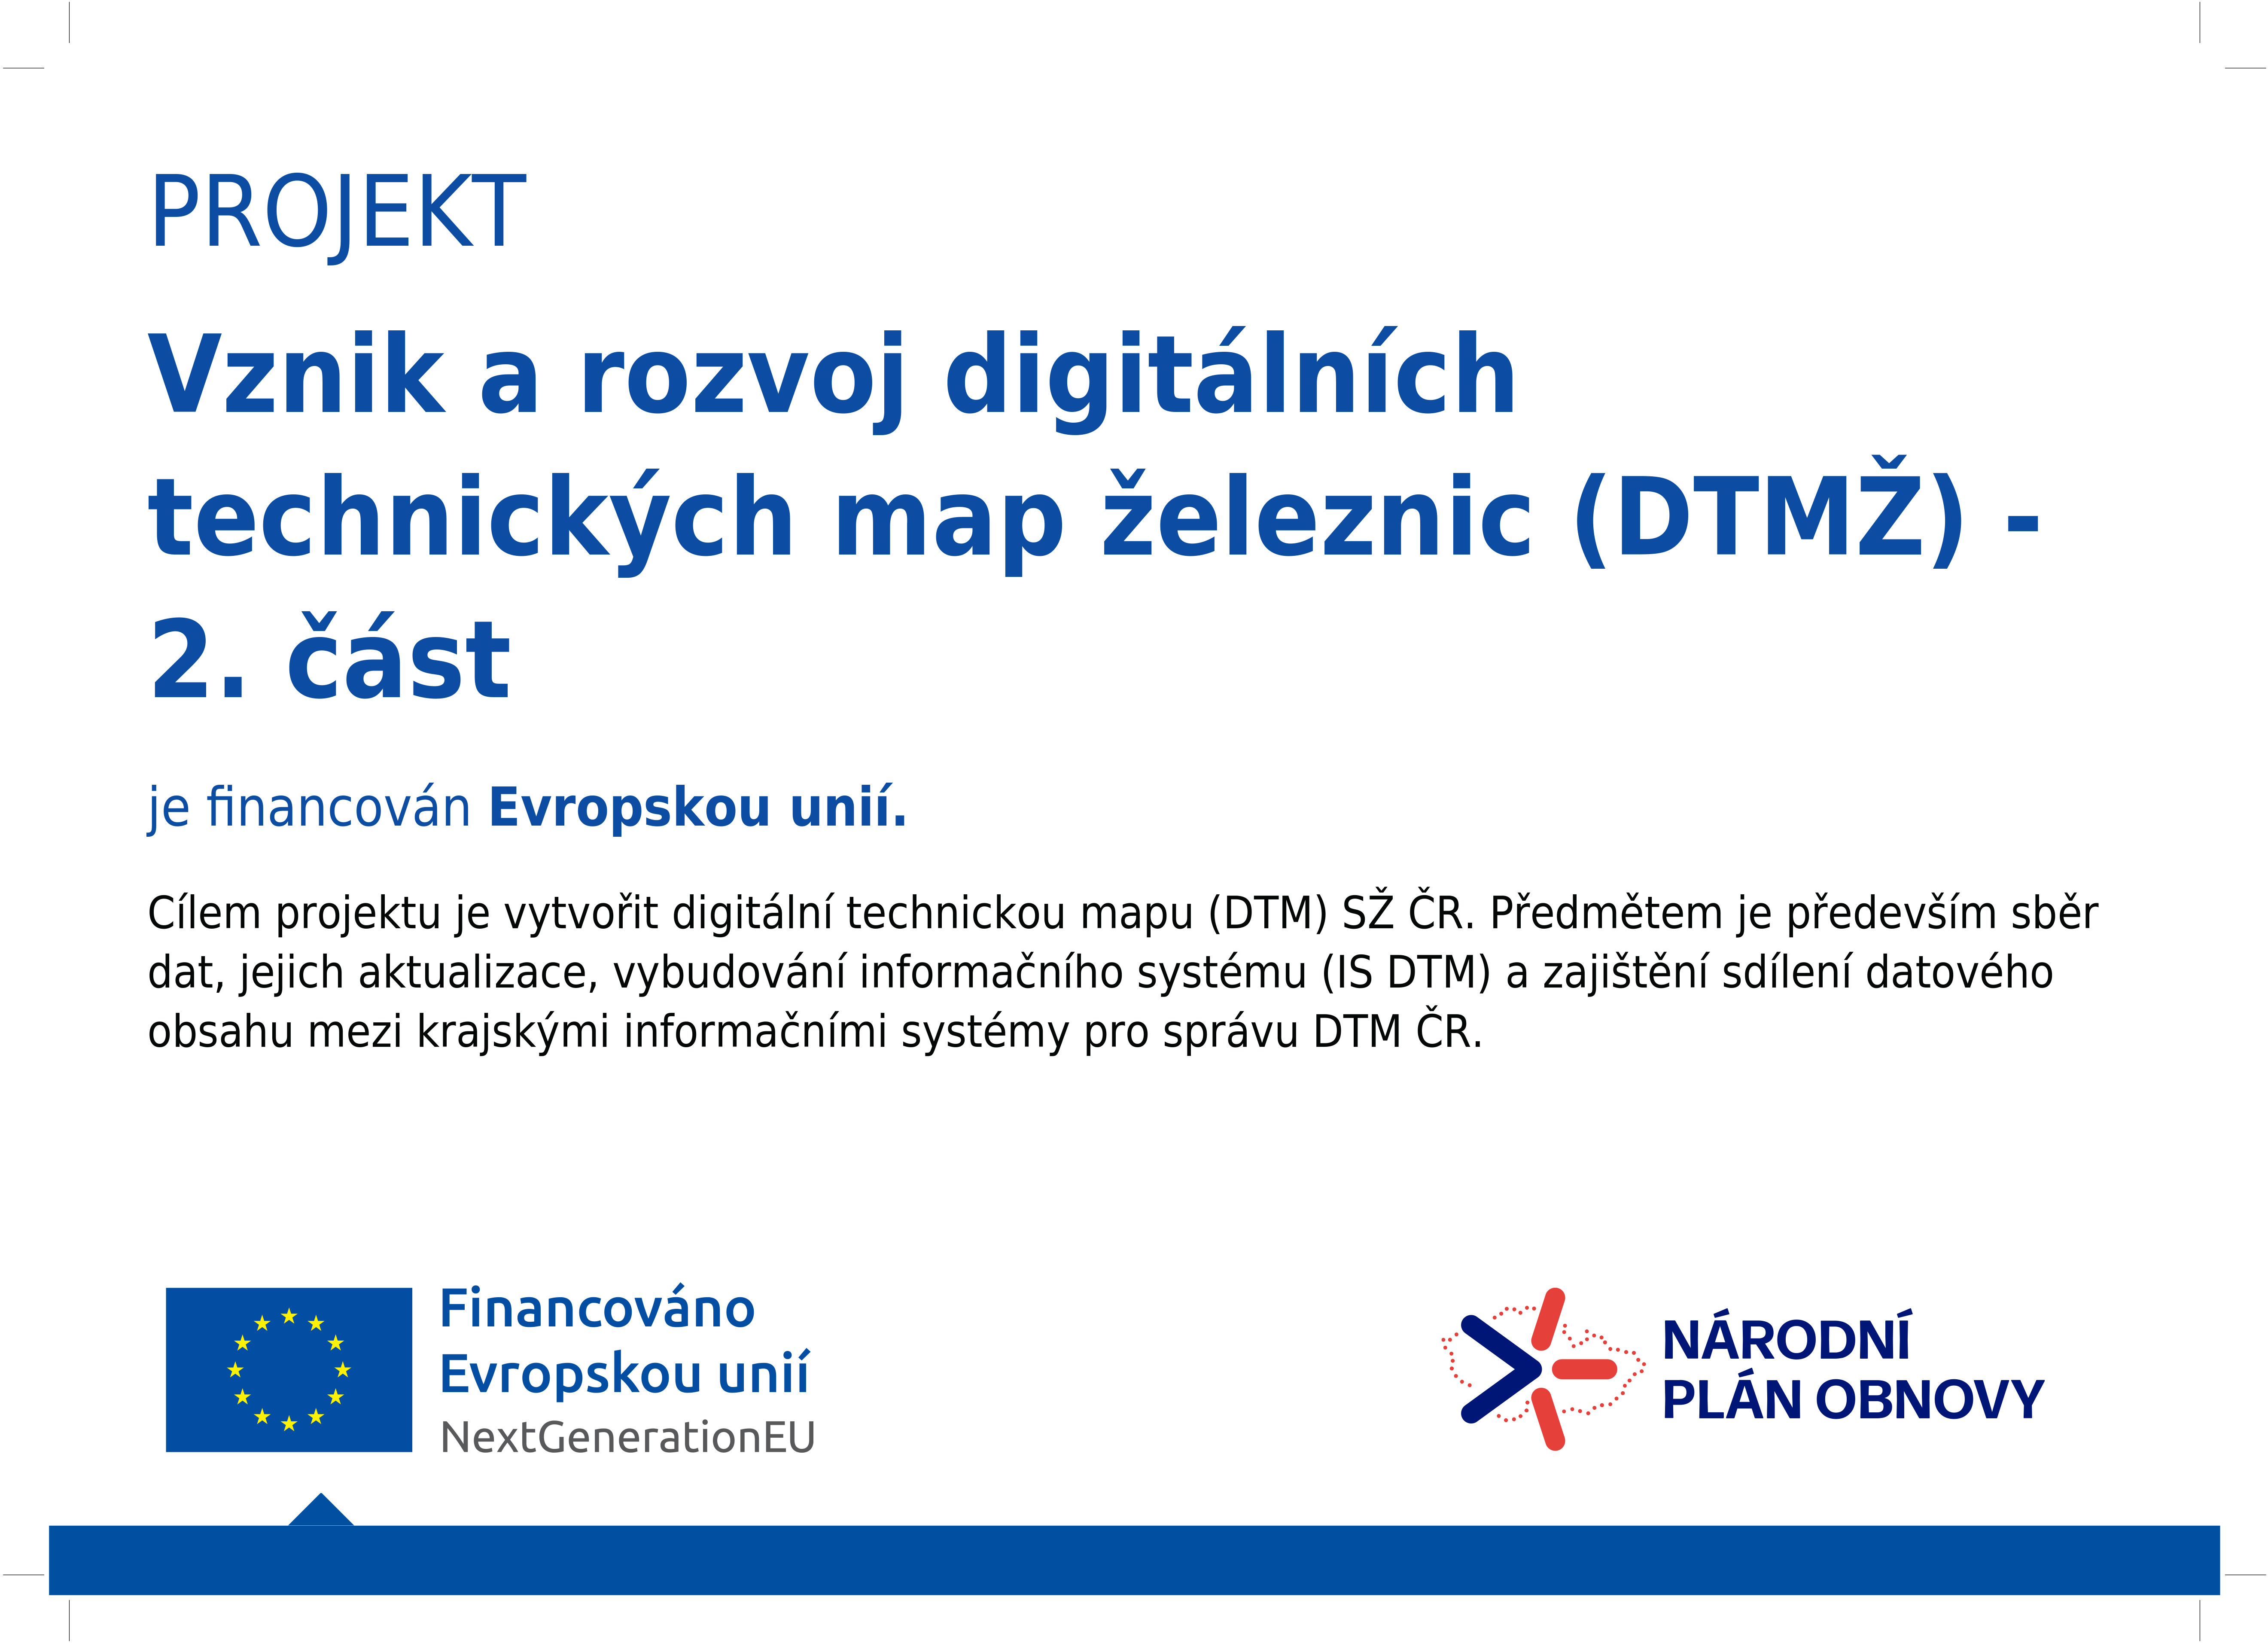 Realizace projektu je spolufinancována z fondu EU v rámci Národního plánu obnovy (NPO) pod názvem "Vznik a rozvoj digitálních technických map železnic (DTMŽ) -  2. část".